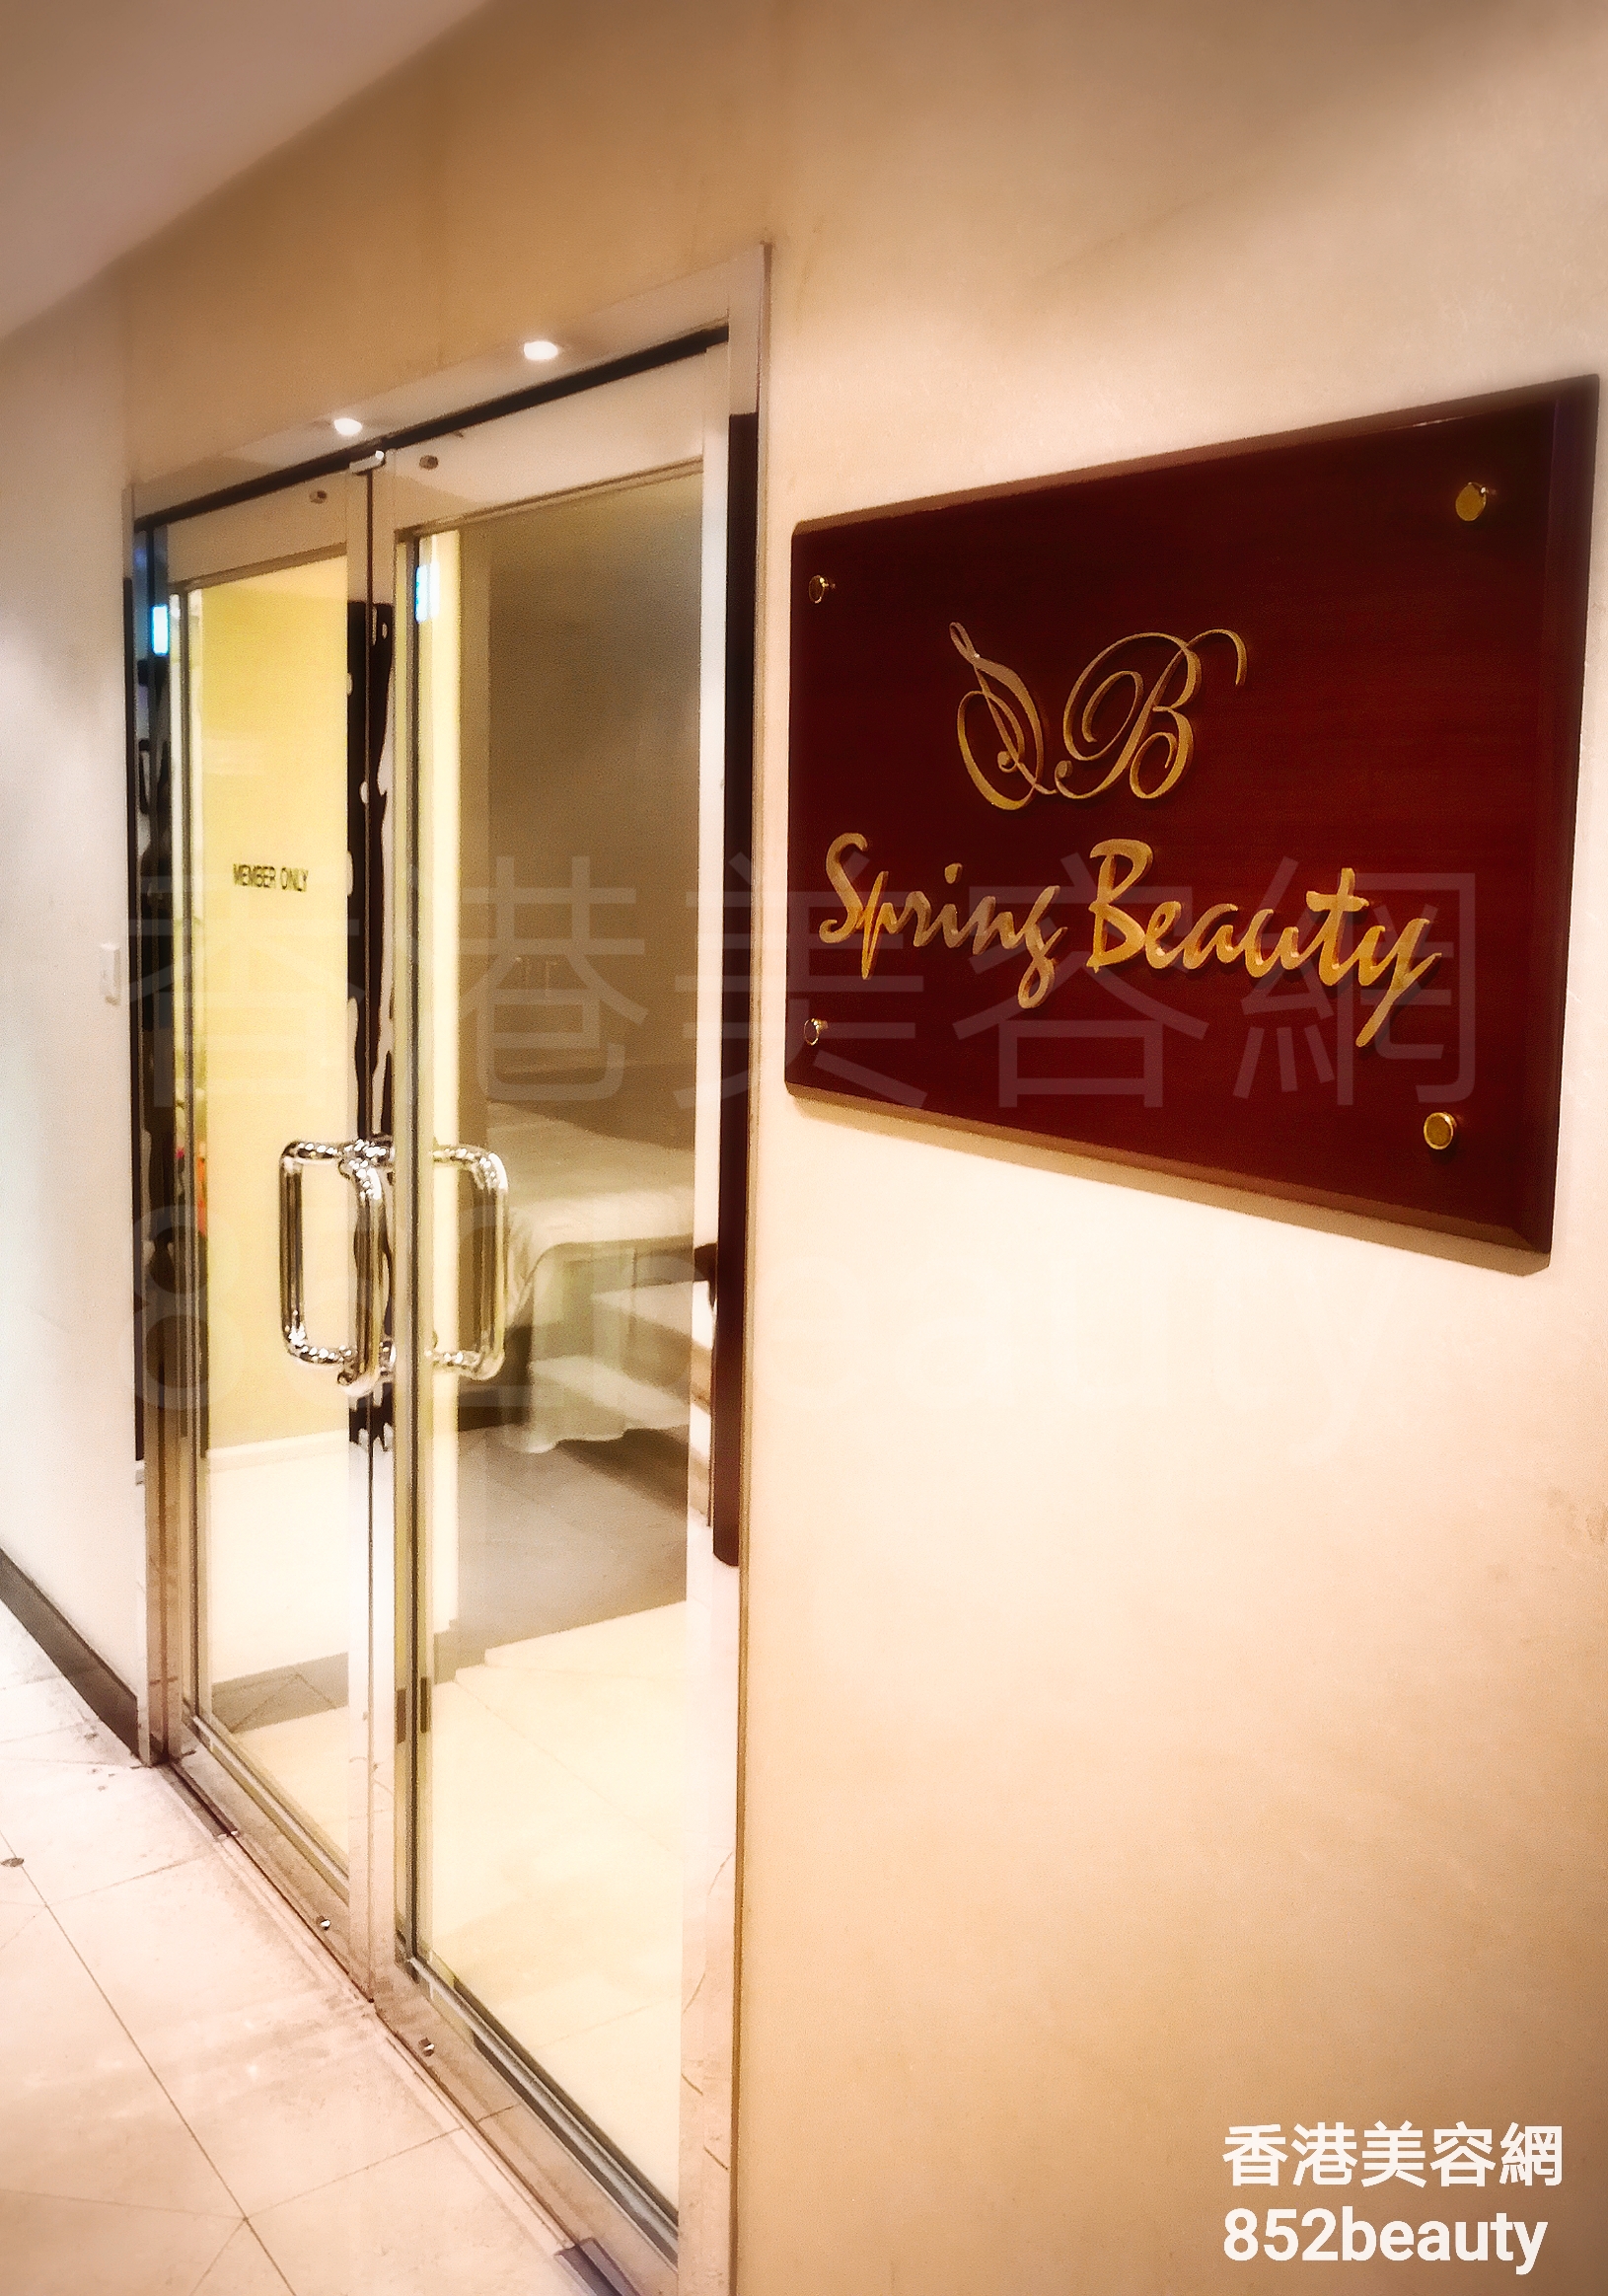 Hong Kong Beauty Salon Beauty Salon / Beautician: Spring Beauty